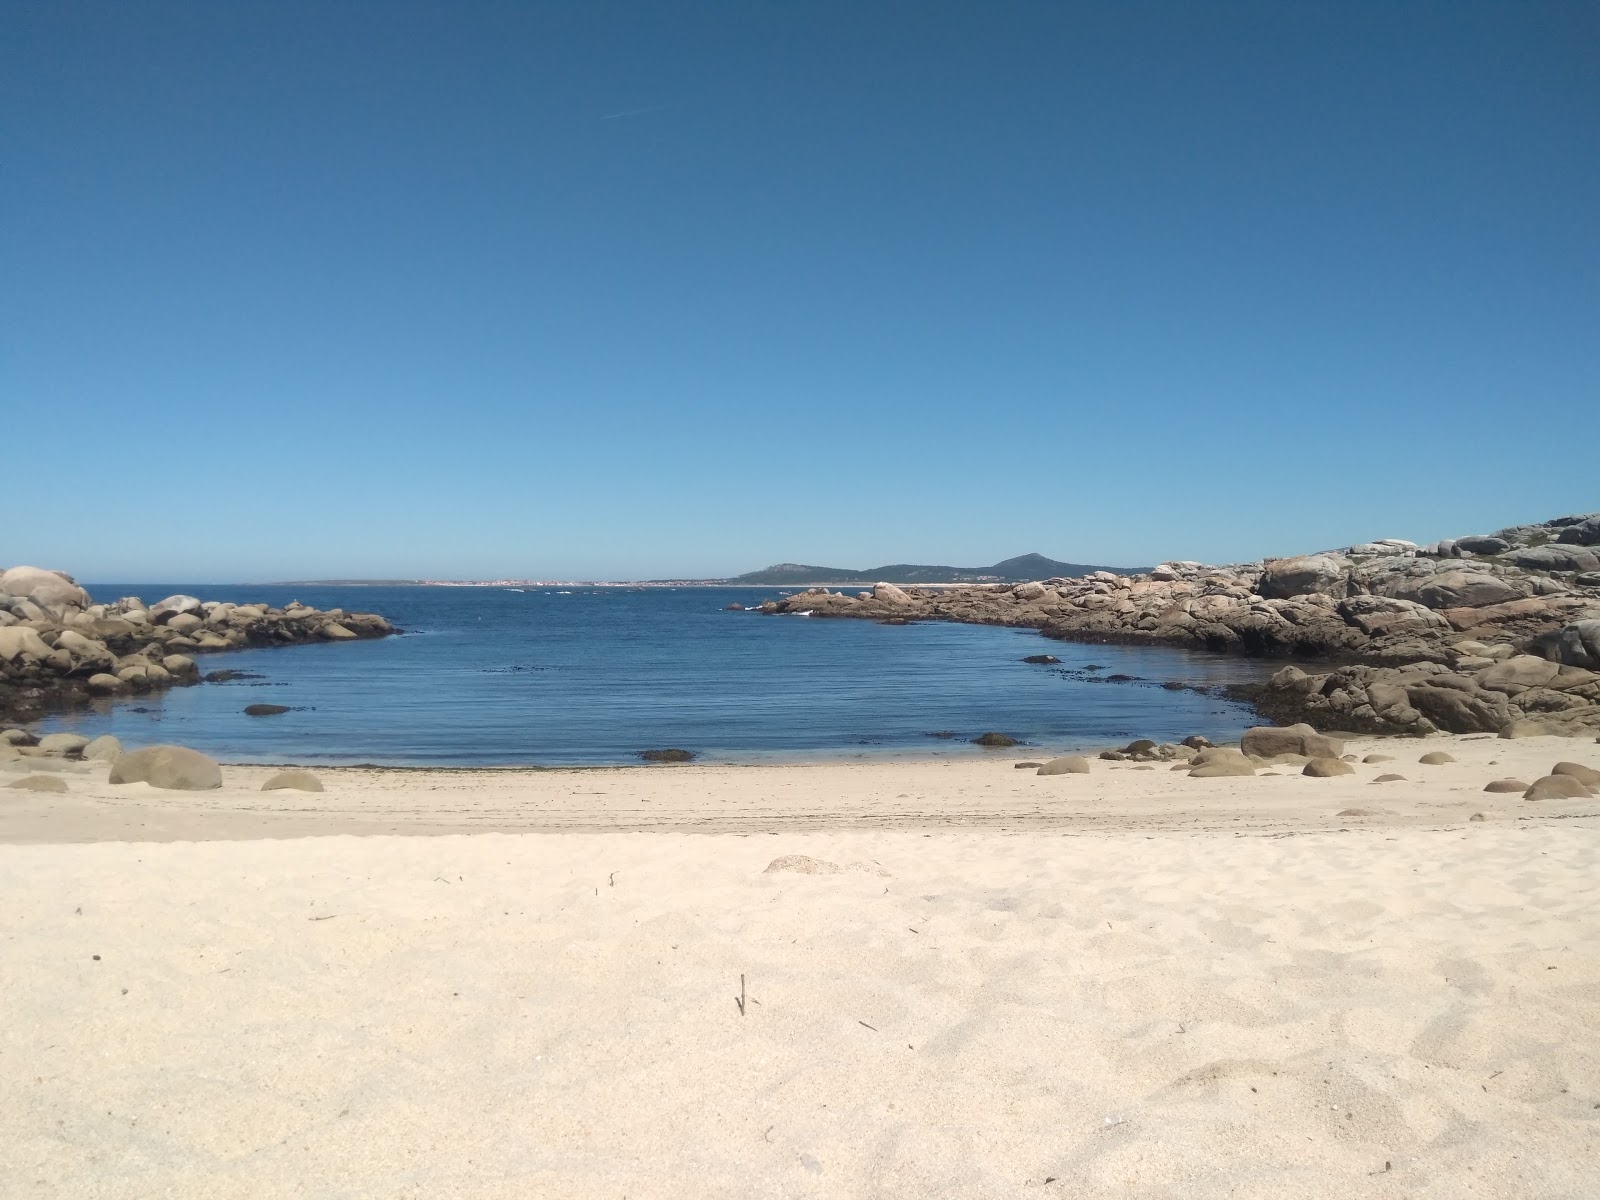 Area Basta beach'in fotoğrafı beyaz kum yüzey ile